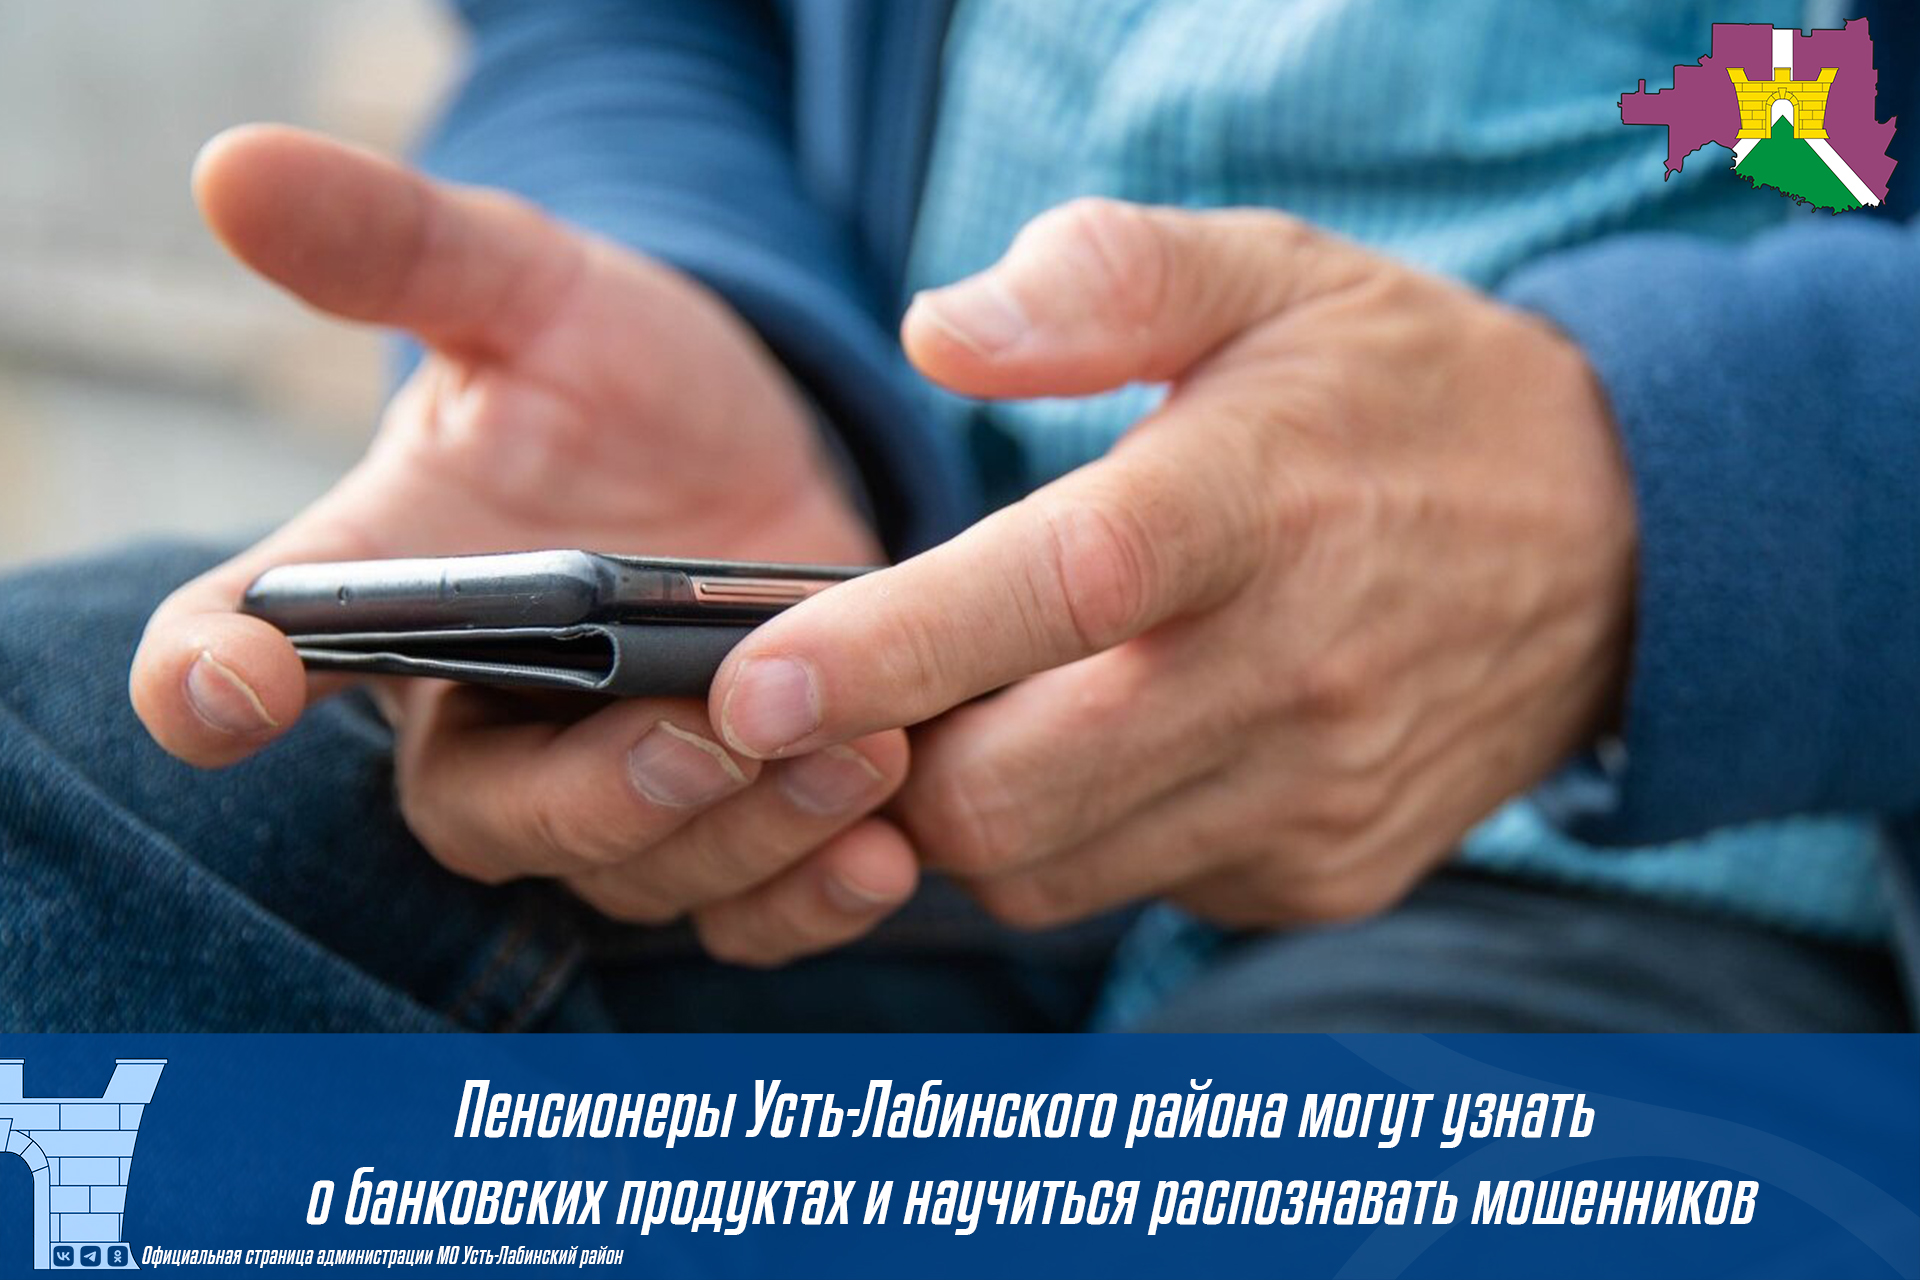 Пенсионеры Усть-Лабинского района могут узнать о банковских продуктах и научиться распознавать мошенников